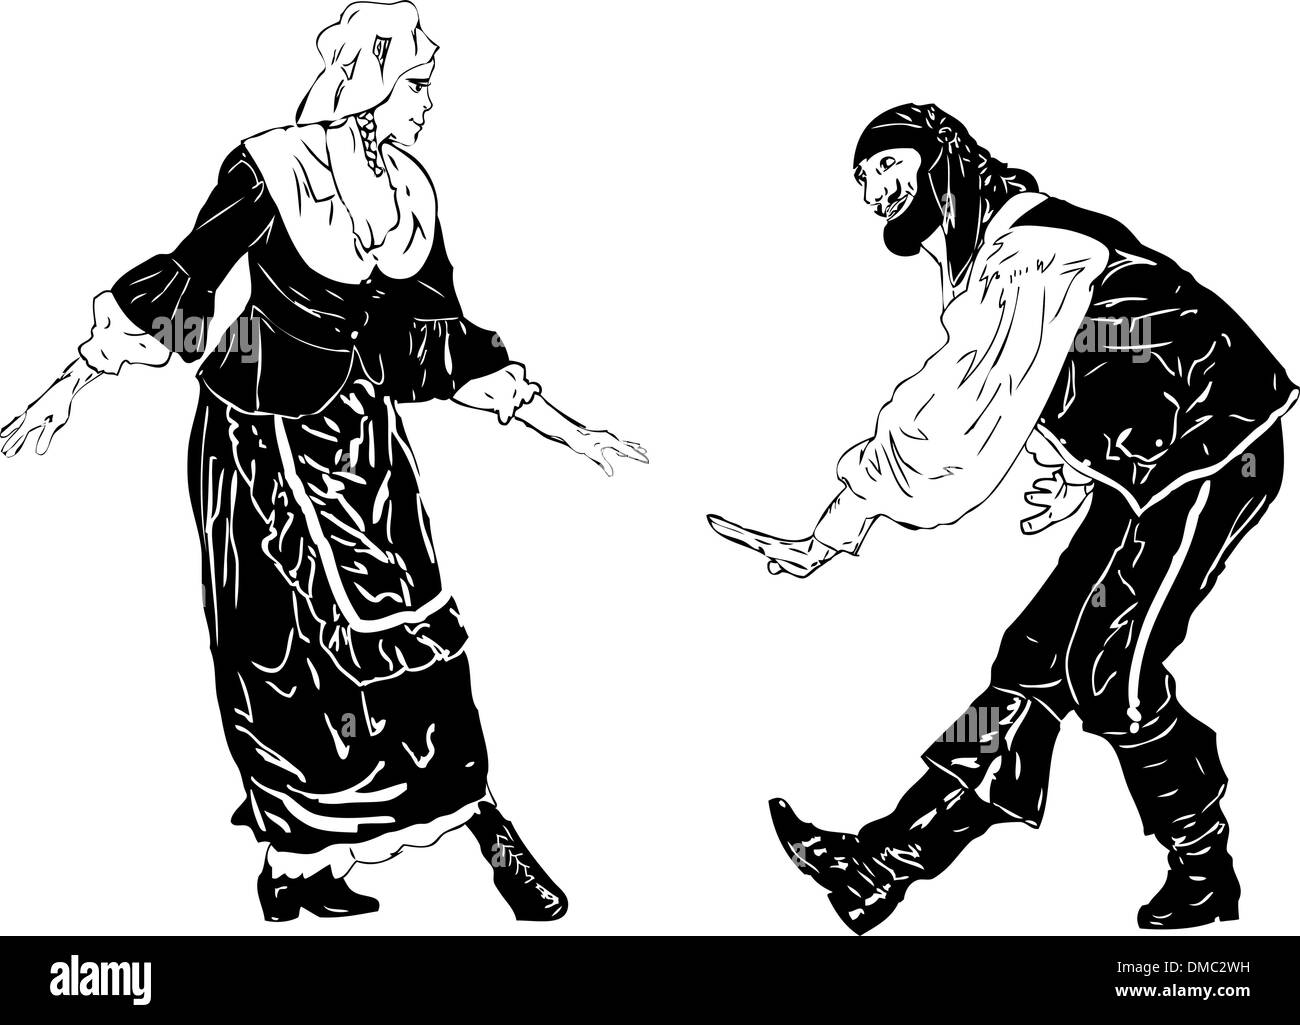 Immagine in bianco e nero di uomini e donne in un arco Illustrazione Vettoriale